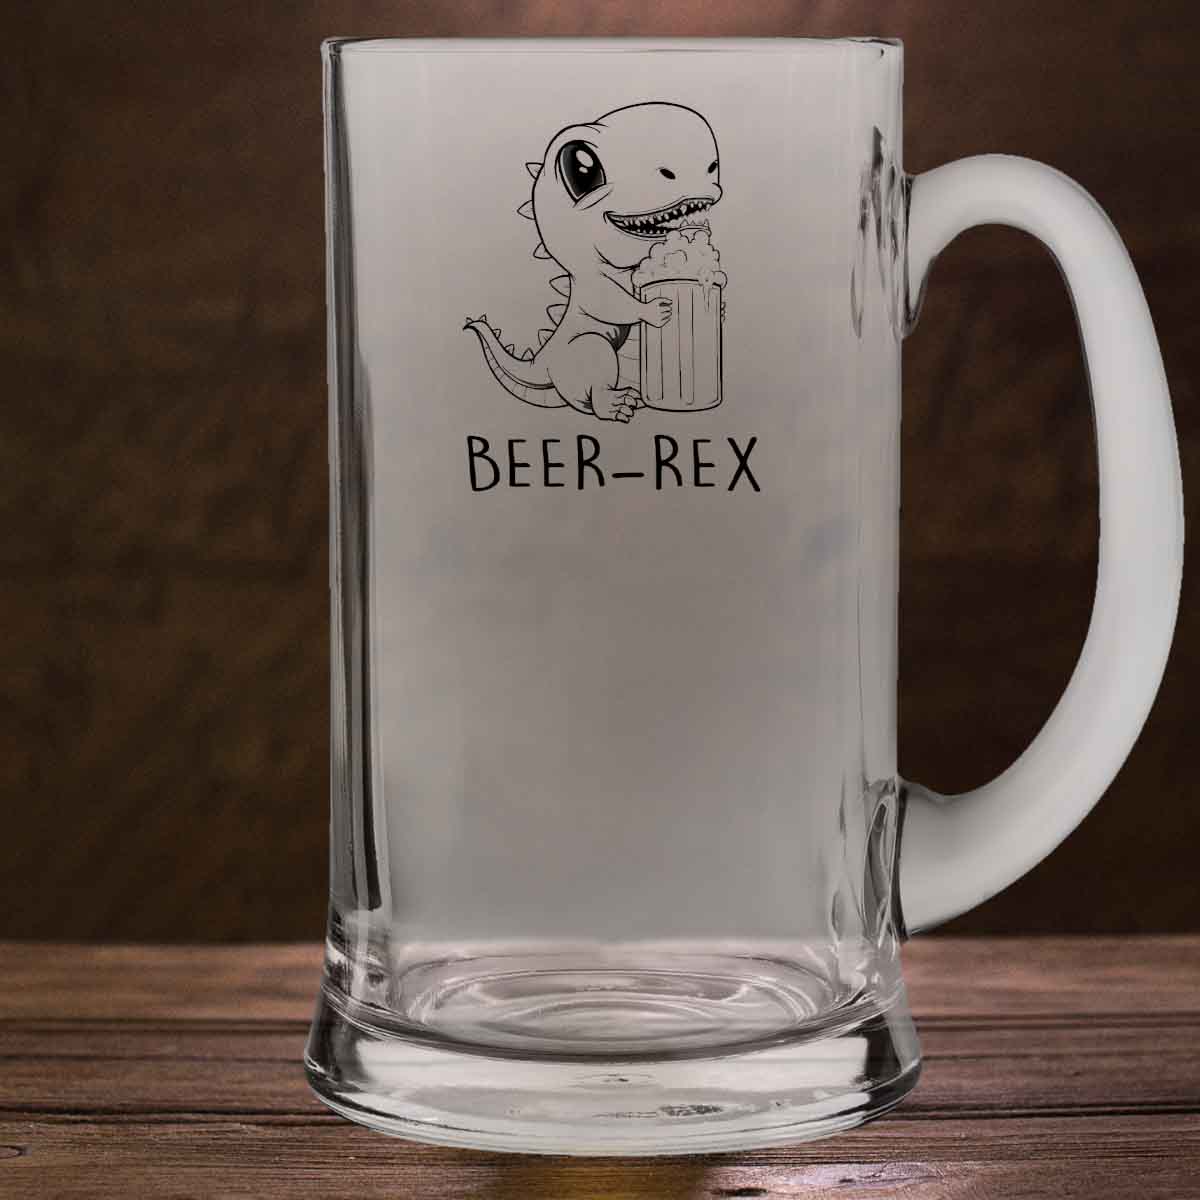 Beer-Rex - Beer glass